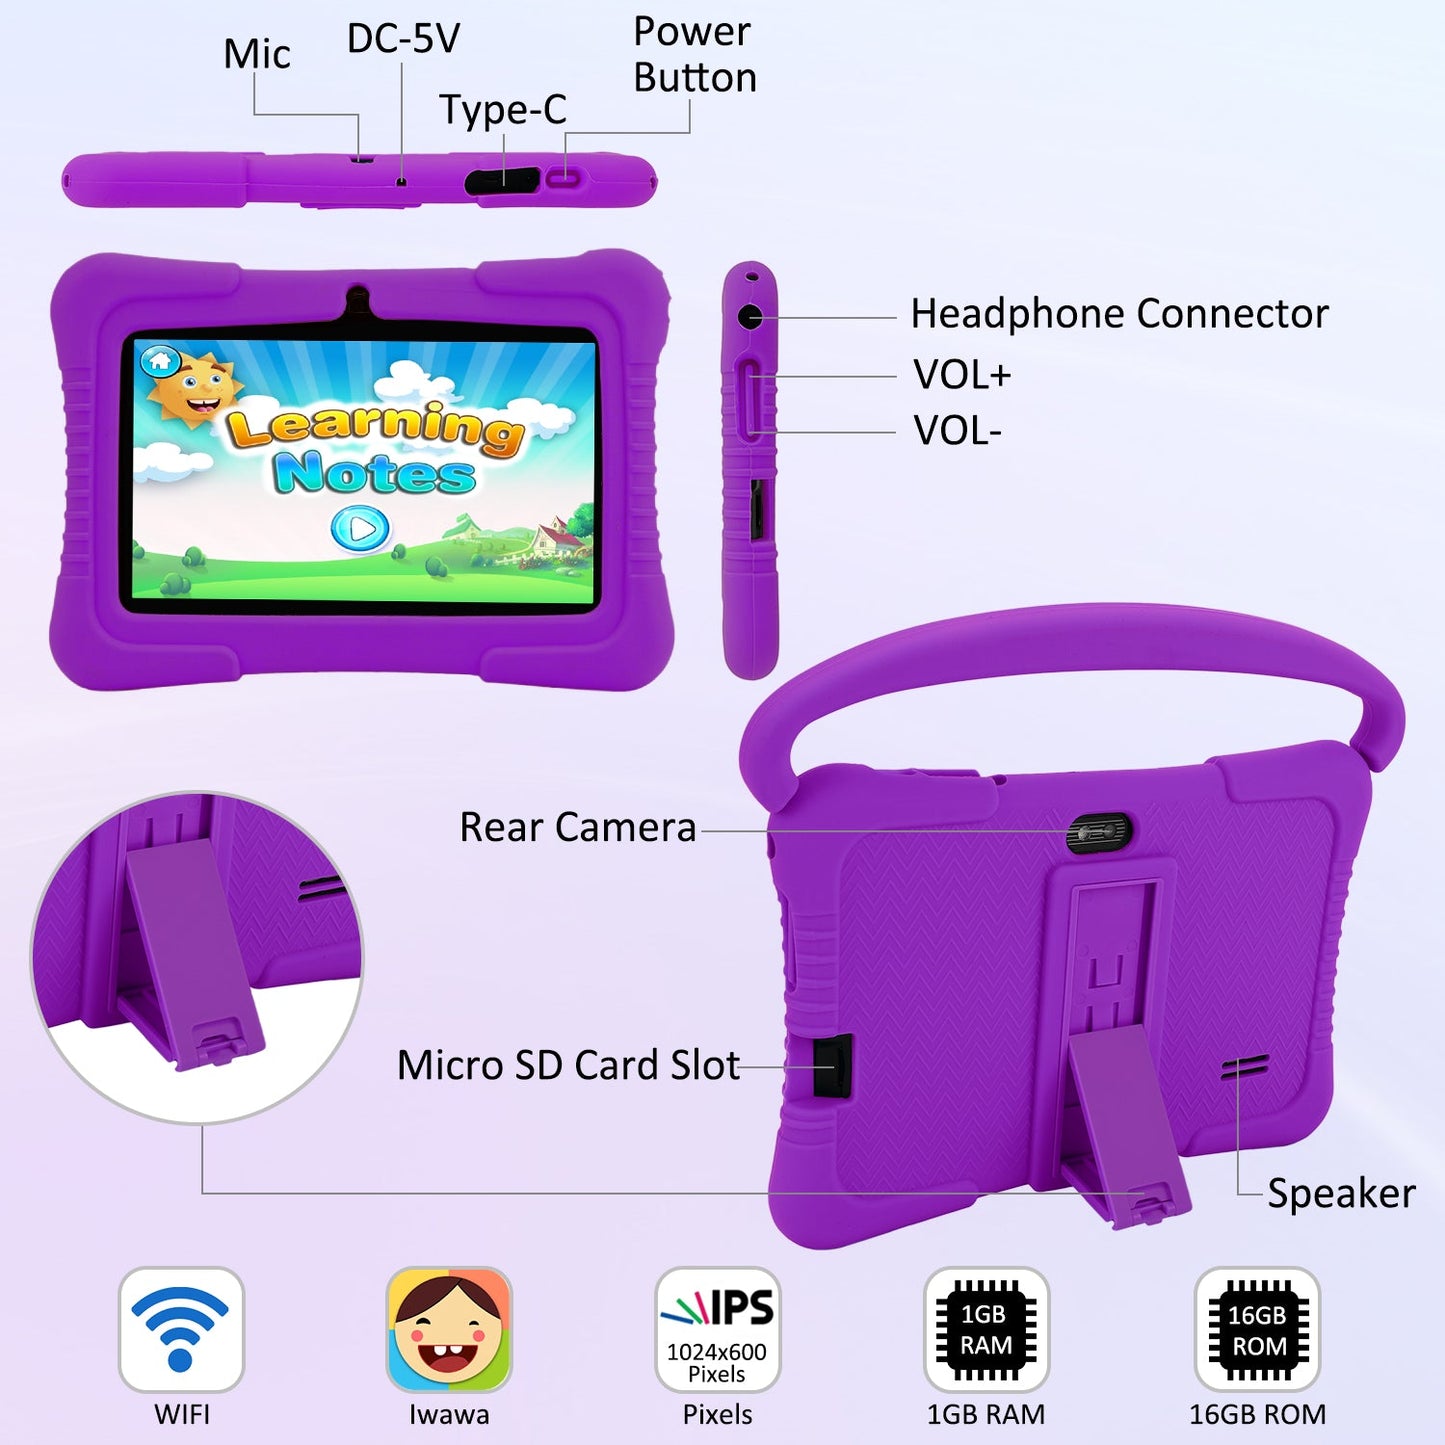 Veidoo 7 inch Kids Tablet